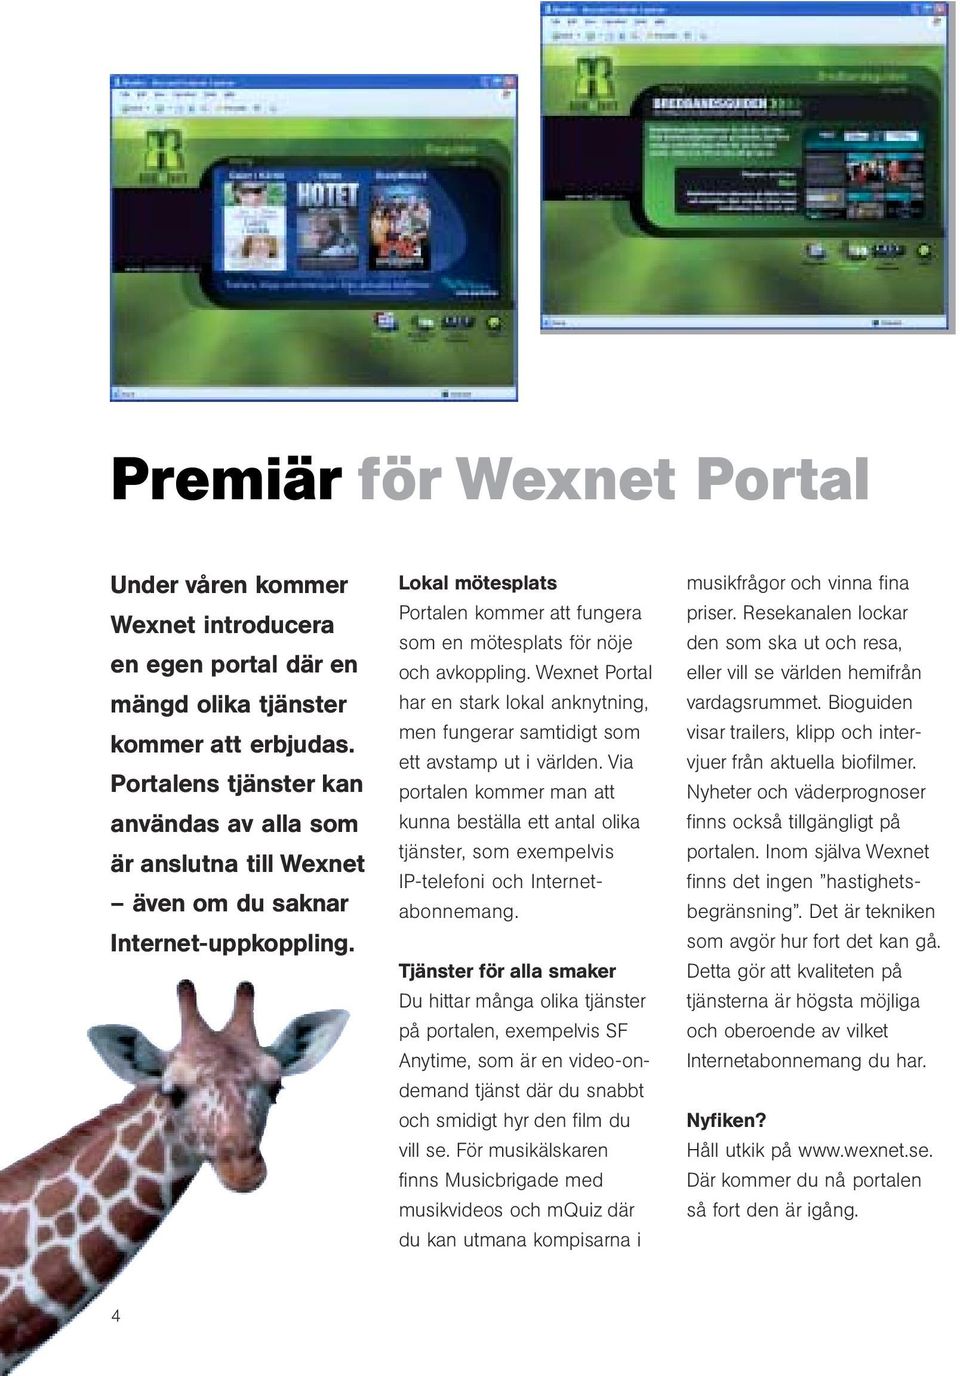 Wexnet Portal har en stark lokal anknytning, men fungerar samtidigt som ett avstamp ut i världen.